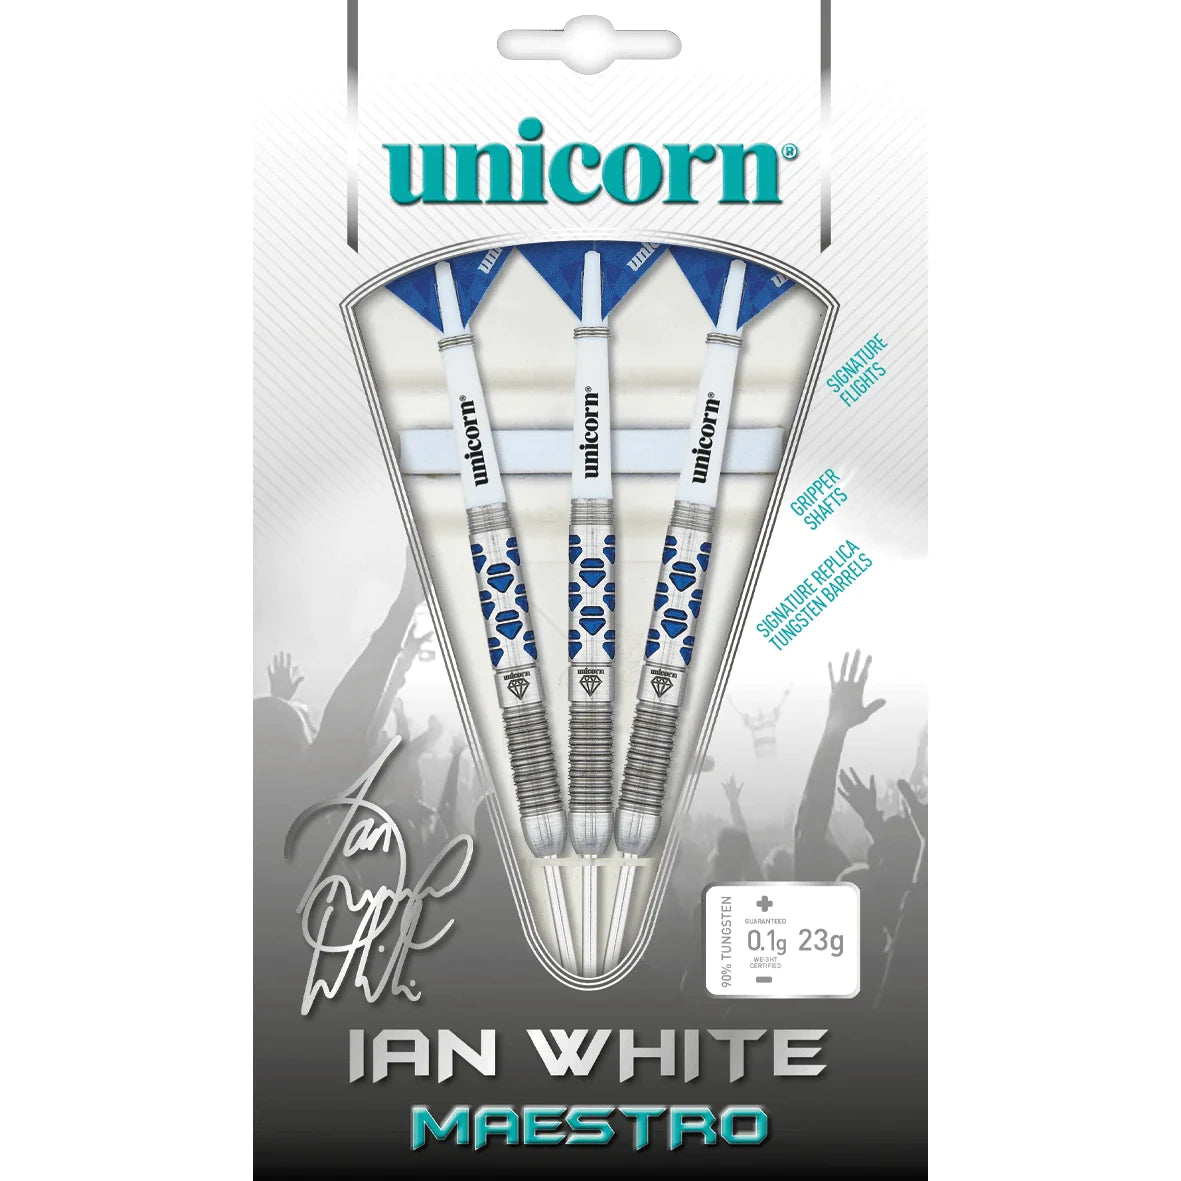 Unicorn Maestro Ian White Phase 2 25g Darts